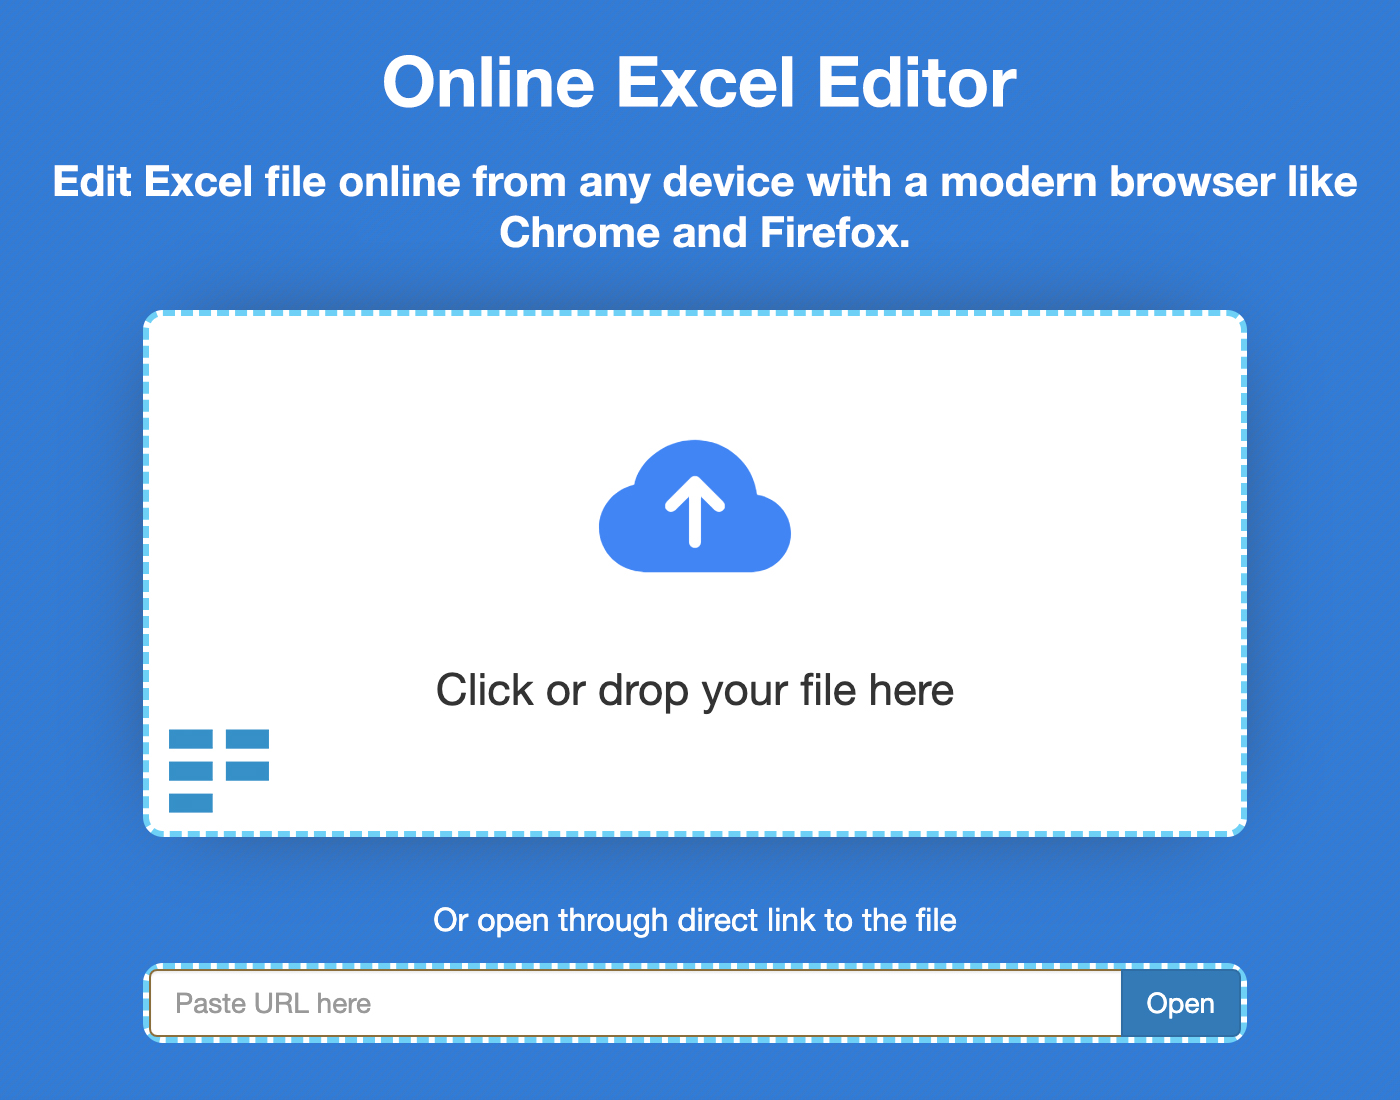 ערוך גליונות אלקטרוניים של Excel באינטרנט